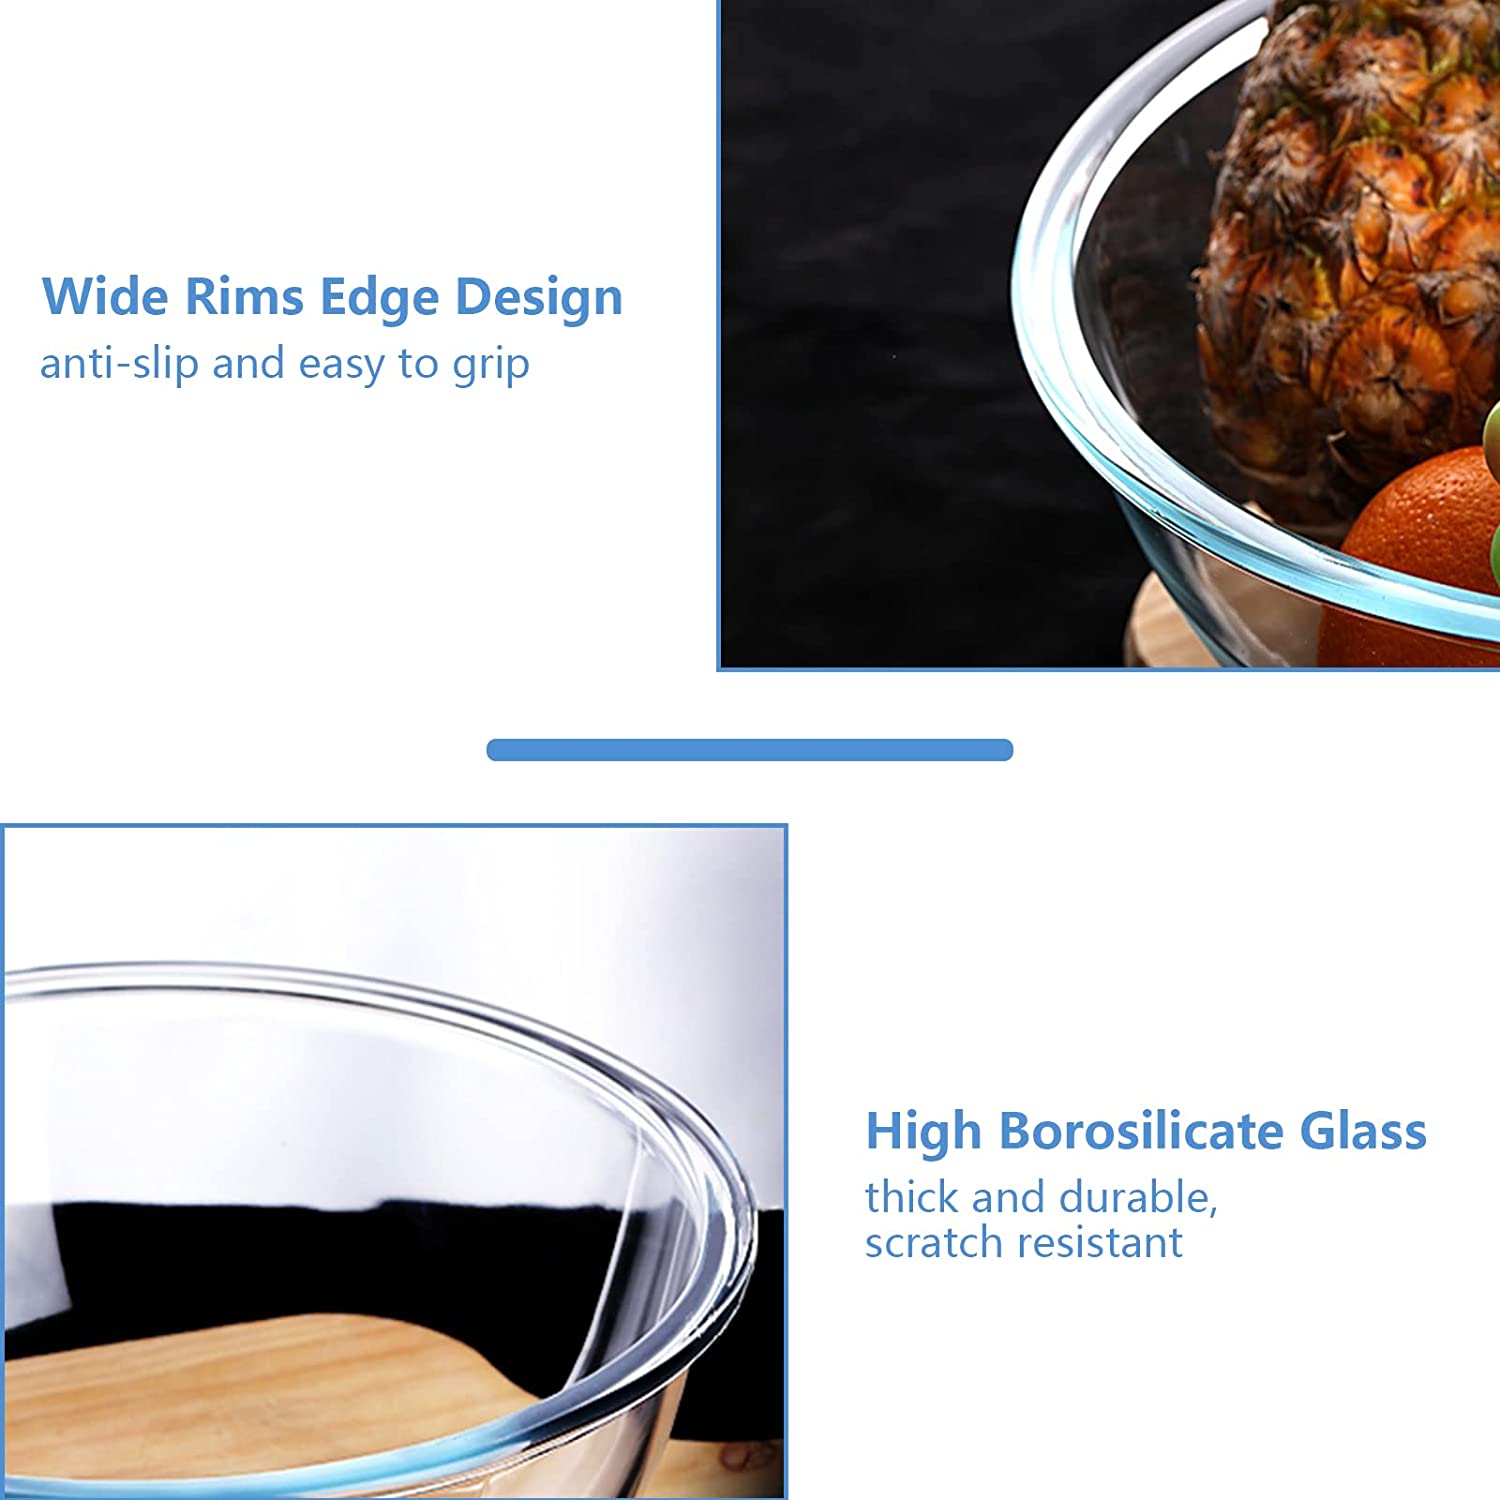 Borosilicate Clear Glass Mixing Bowls with Lids Set of 4 (0.53qt, 1.1q